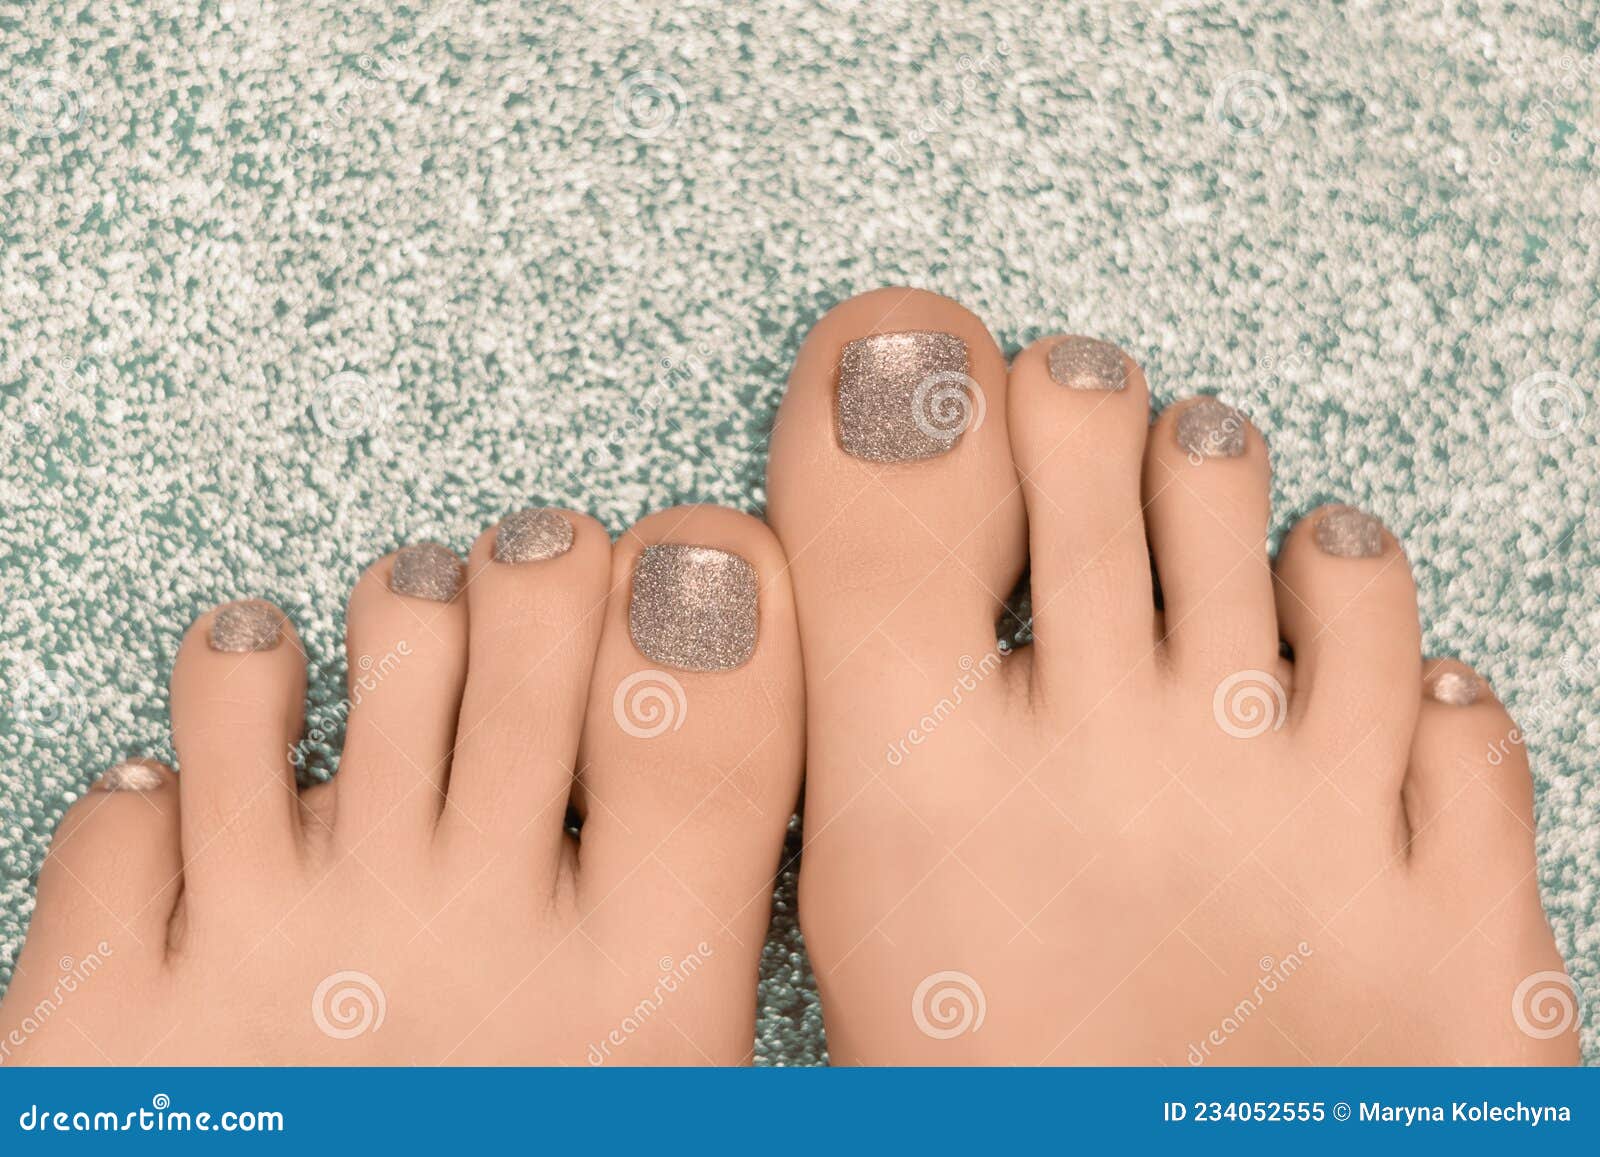 Silver nail design | Silver nail designs, Toe nails, Pretty toe nails